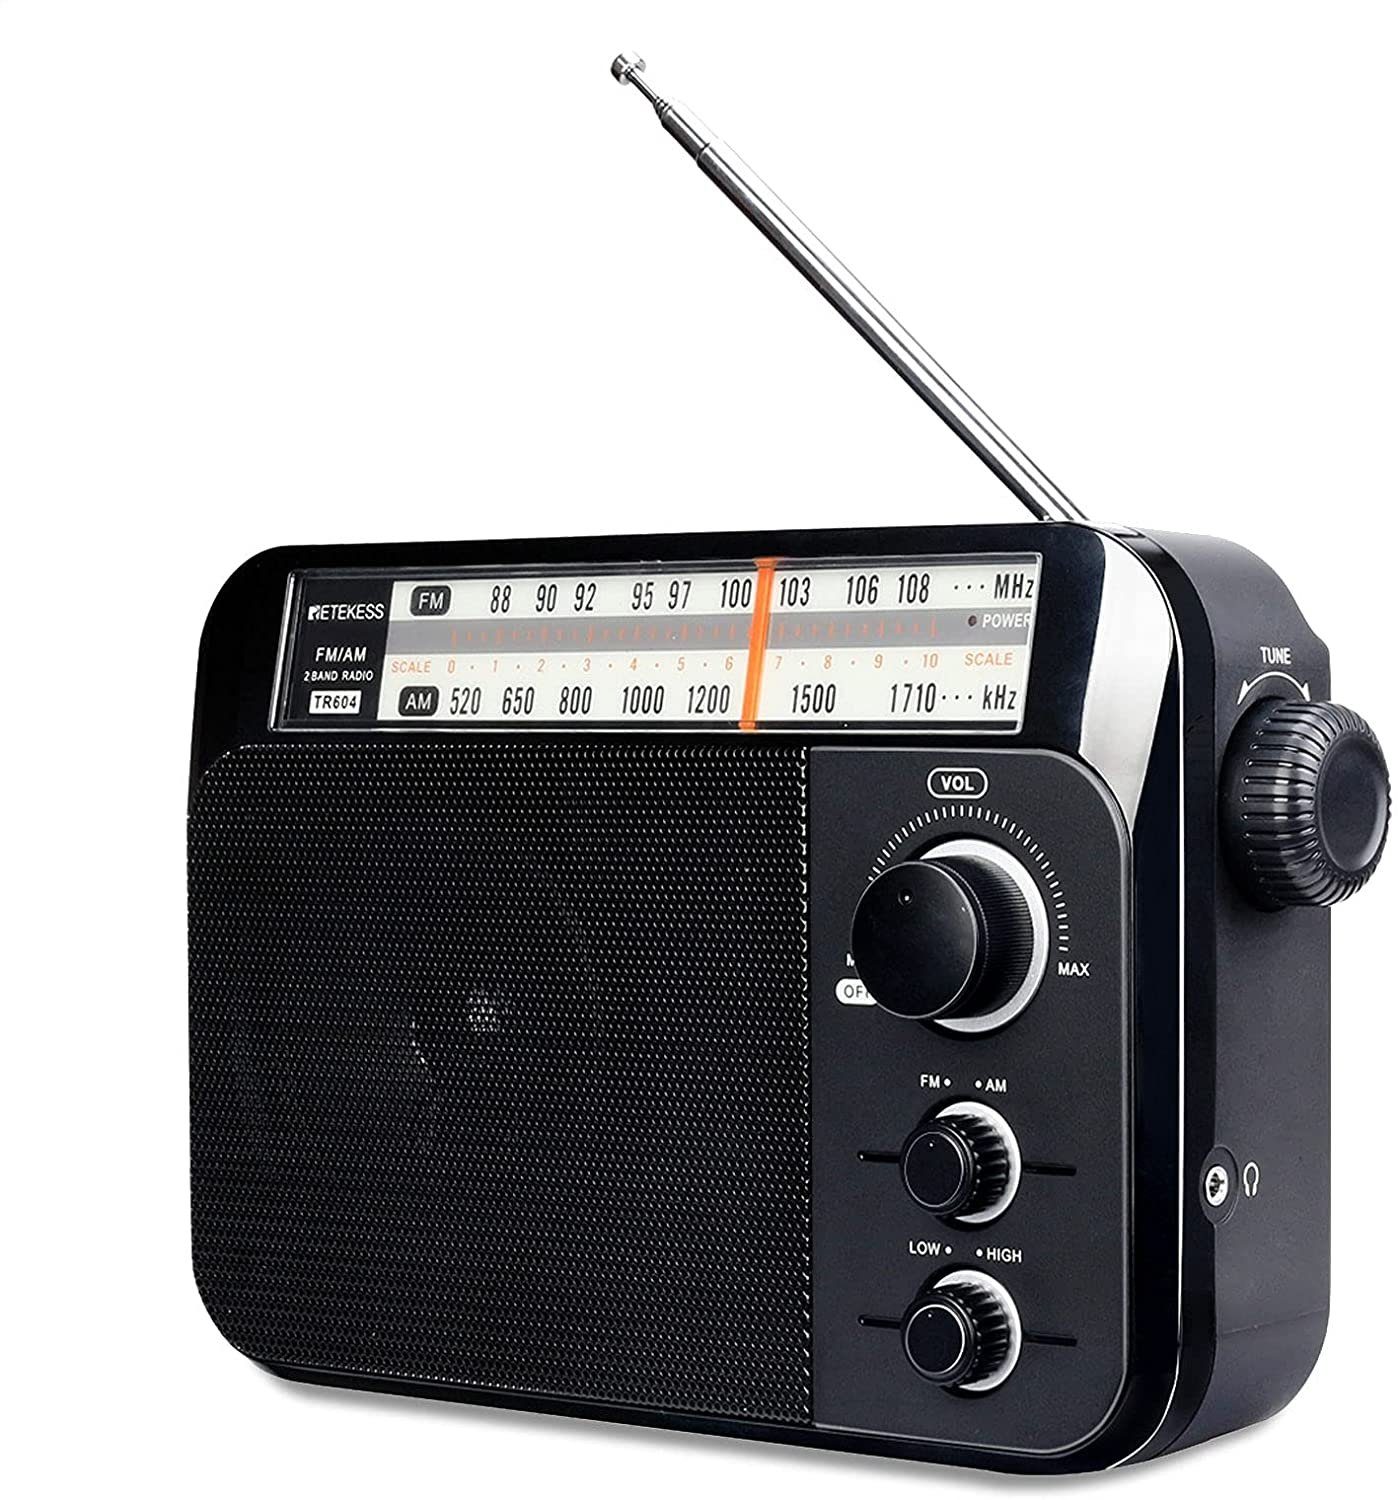 Retekess »TR604« UKW-Radio (FM / AM-Radio, Besserer Empfang, Handliche  Drehknöpfe, Betrieb mit AC / D-Batterie, Standard 3,5 mm  Kopfhöreranschluss) online kaufen | OTTO